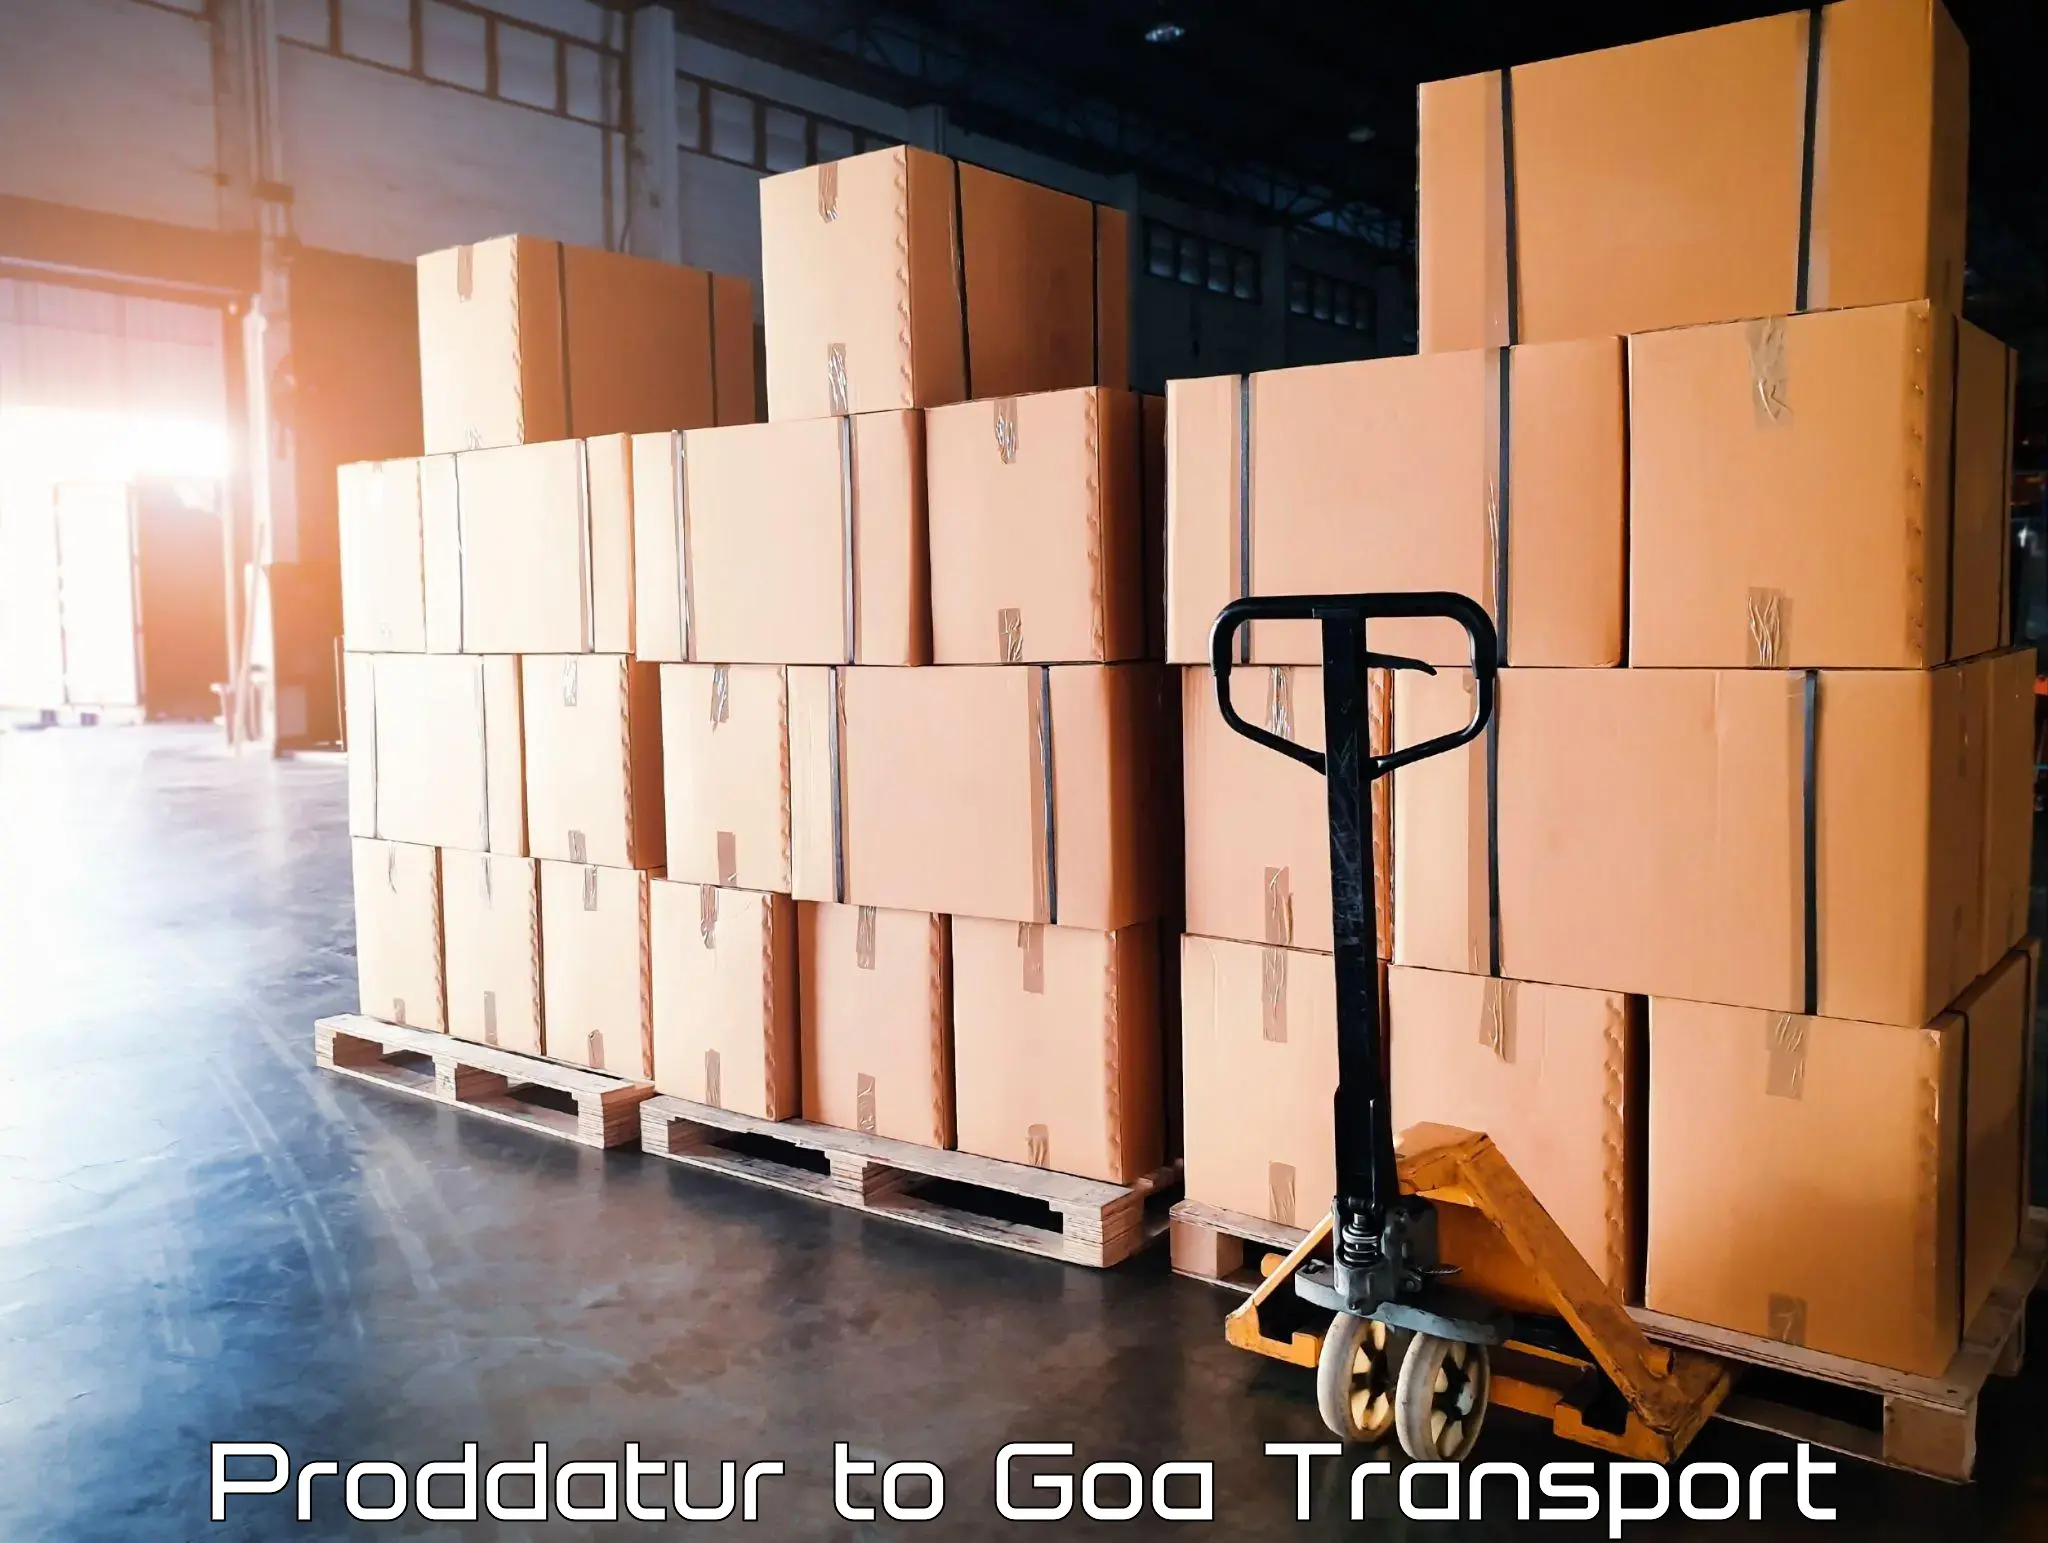 India truck logistics services Proddatur to IIT Goa